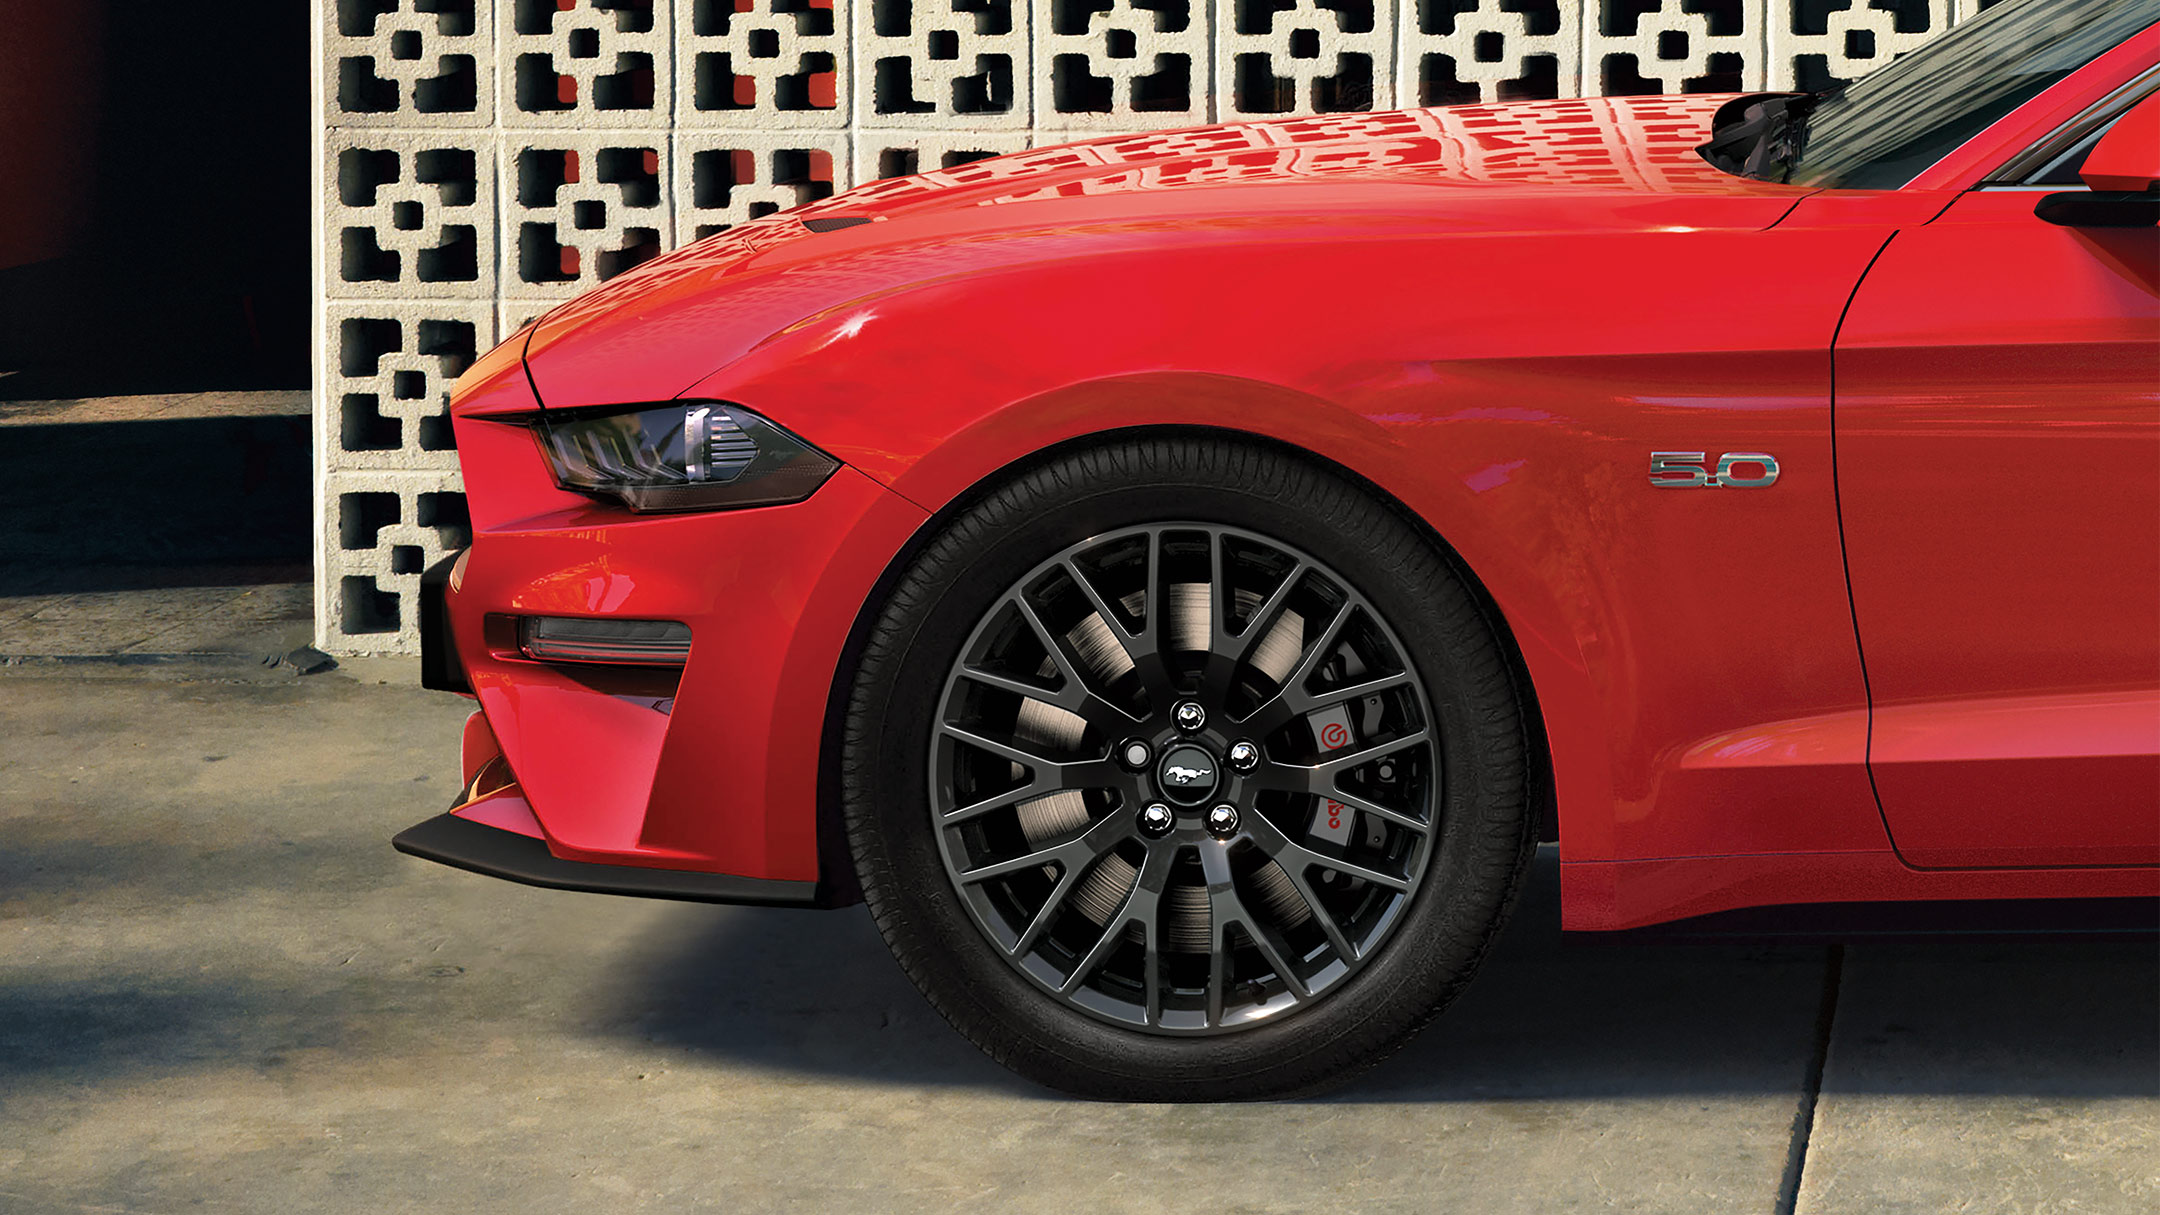 Ford Mustang couleur rouge. Vue latérale de l’avant, stationnant devant un mur de pierre décoré